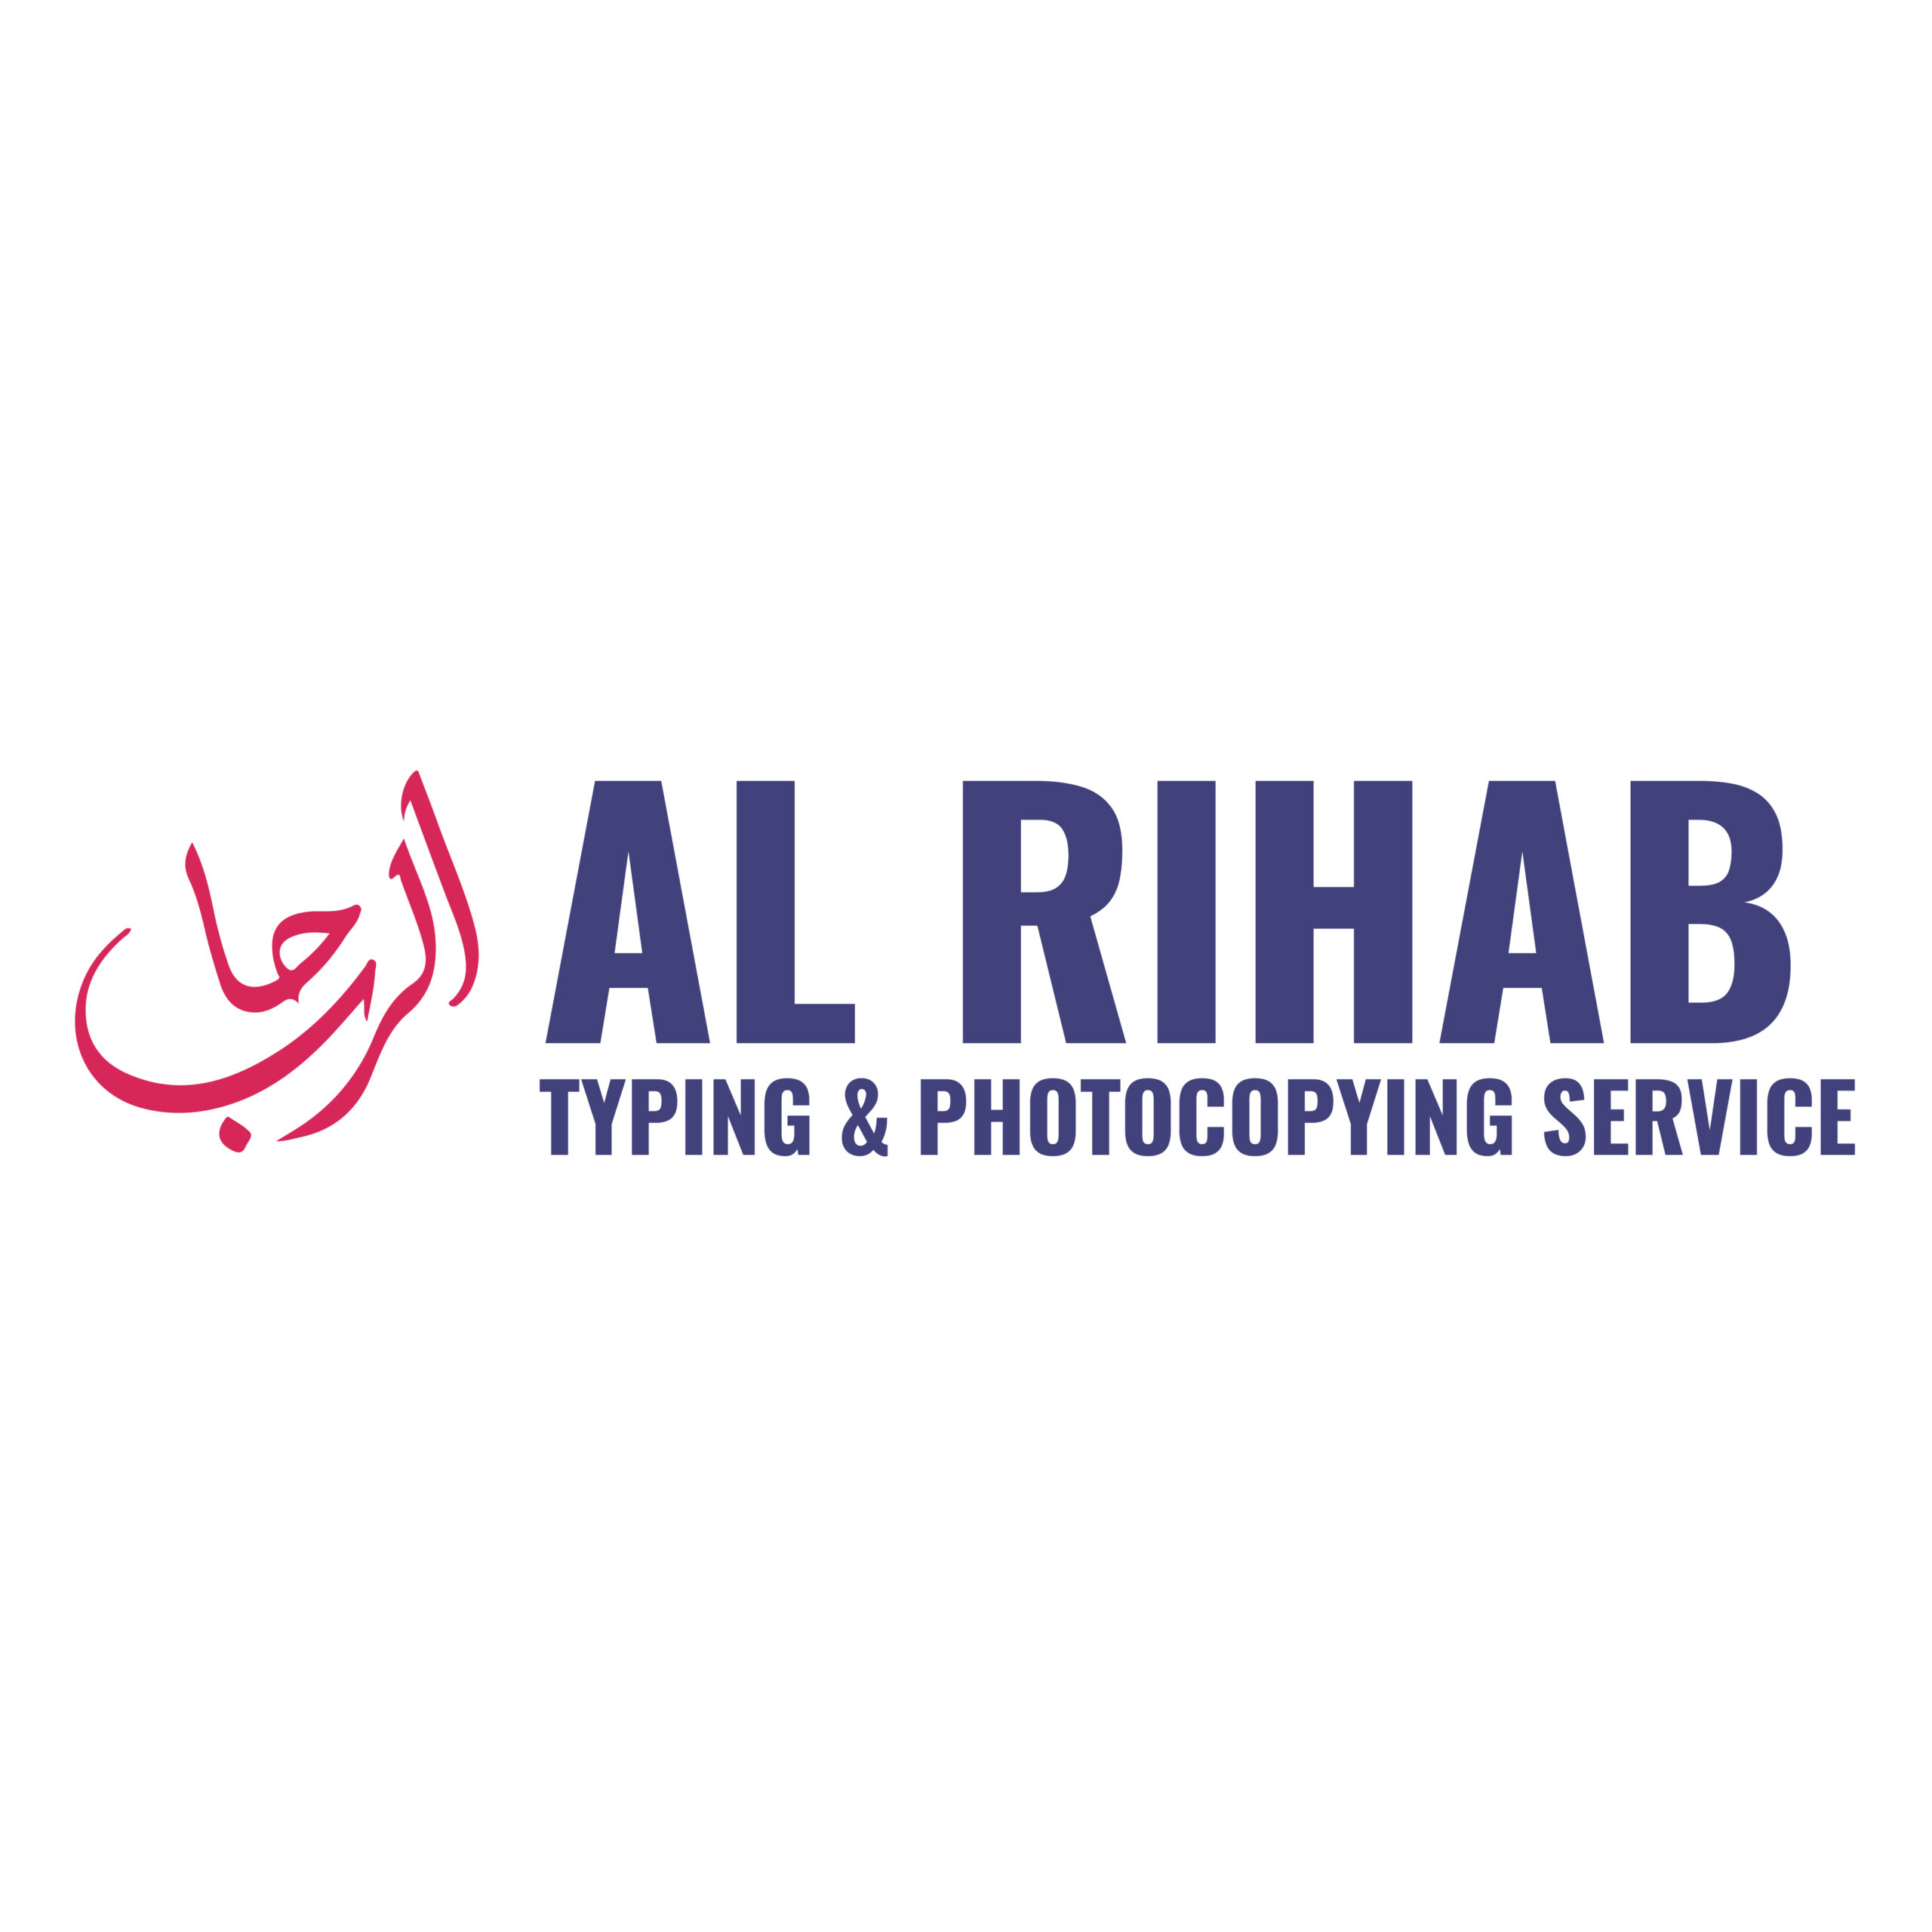 Al Rihab Ryping